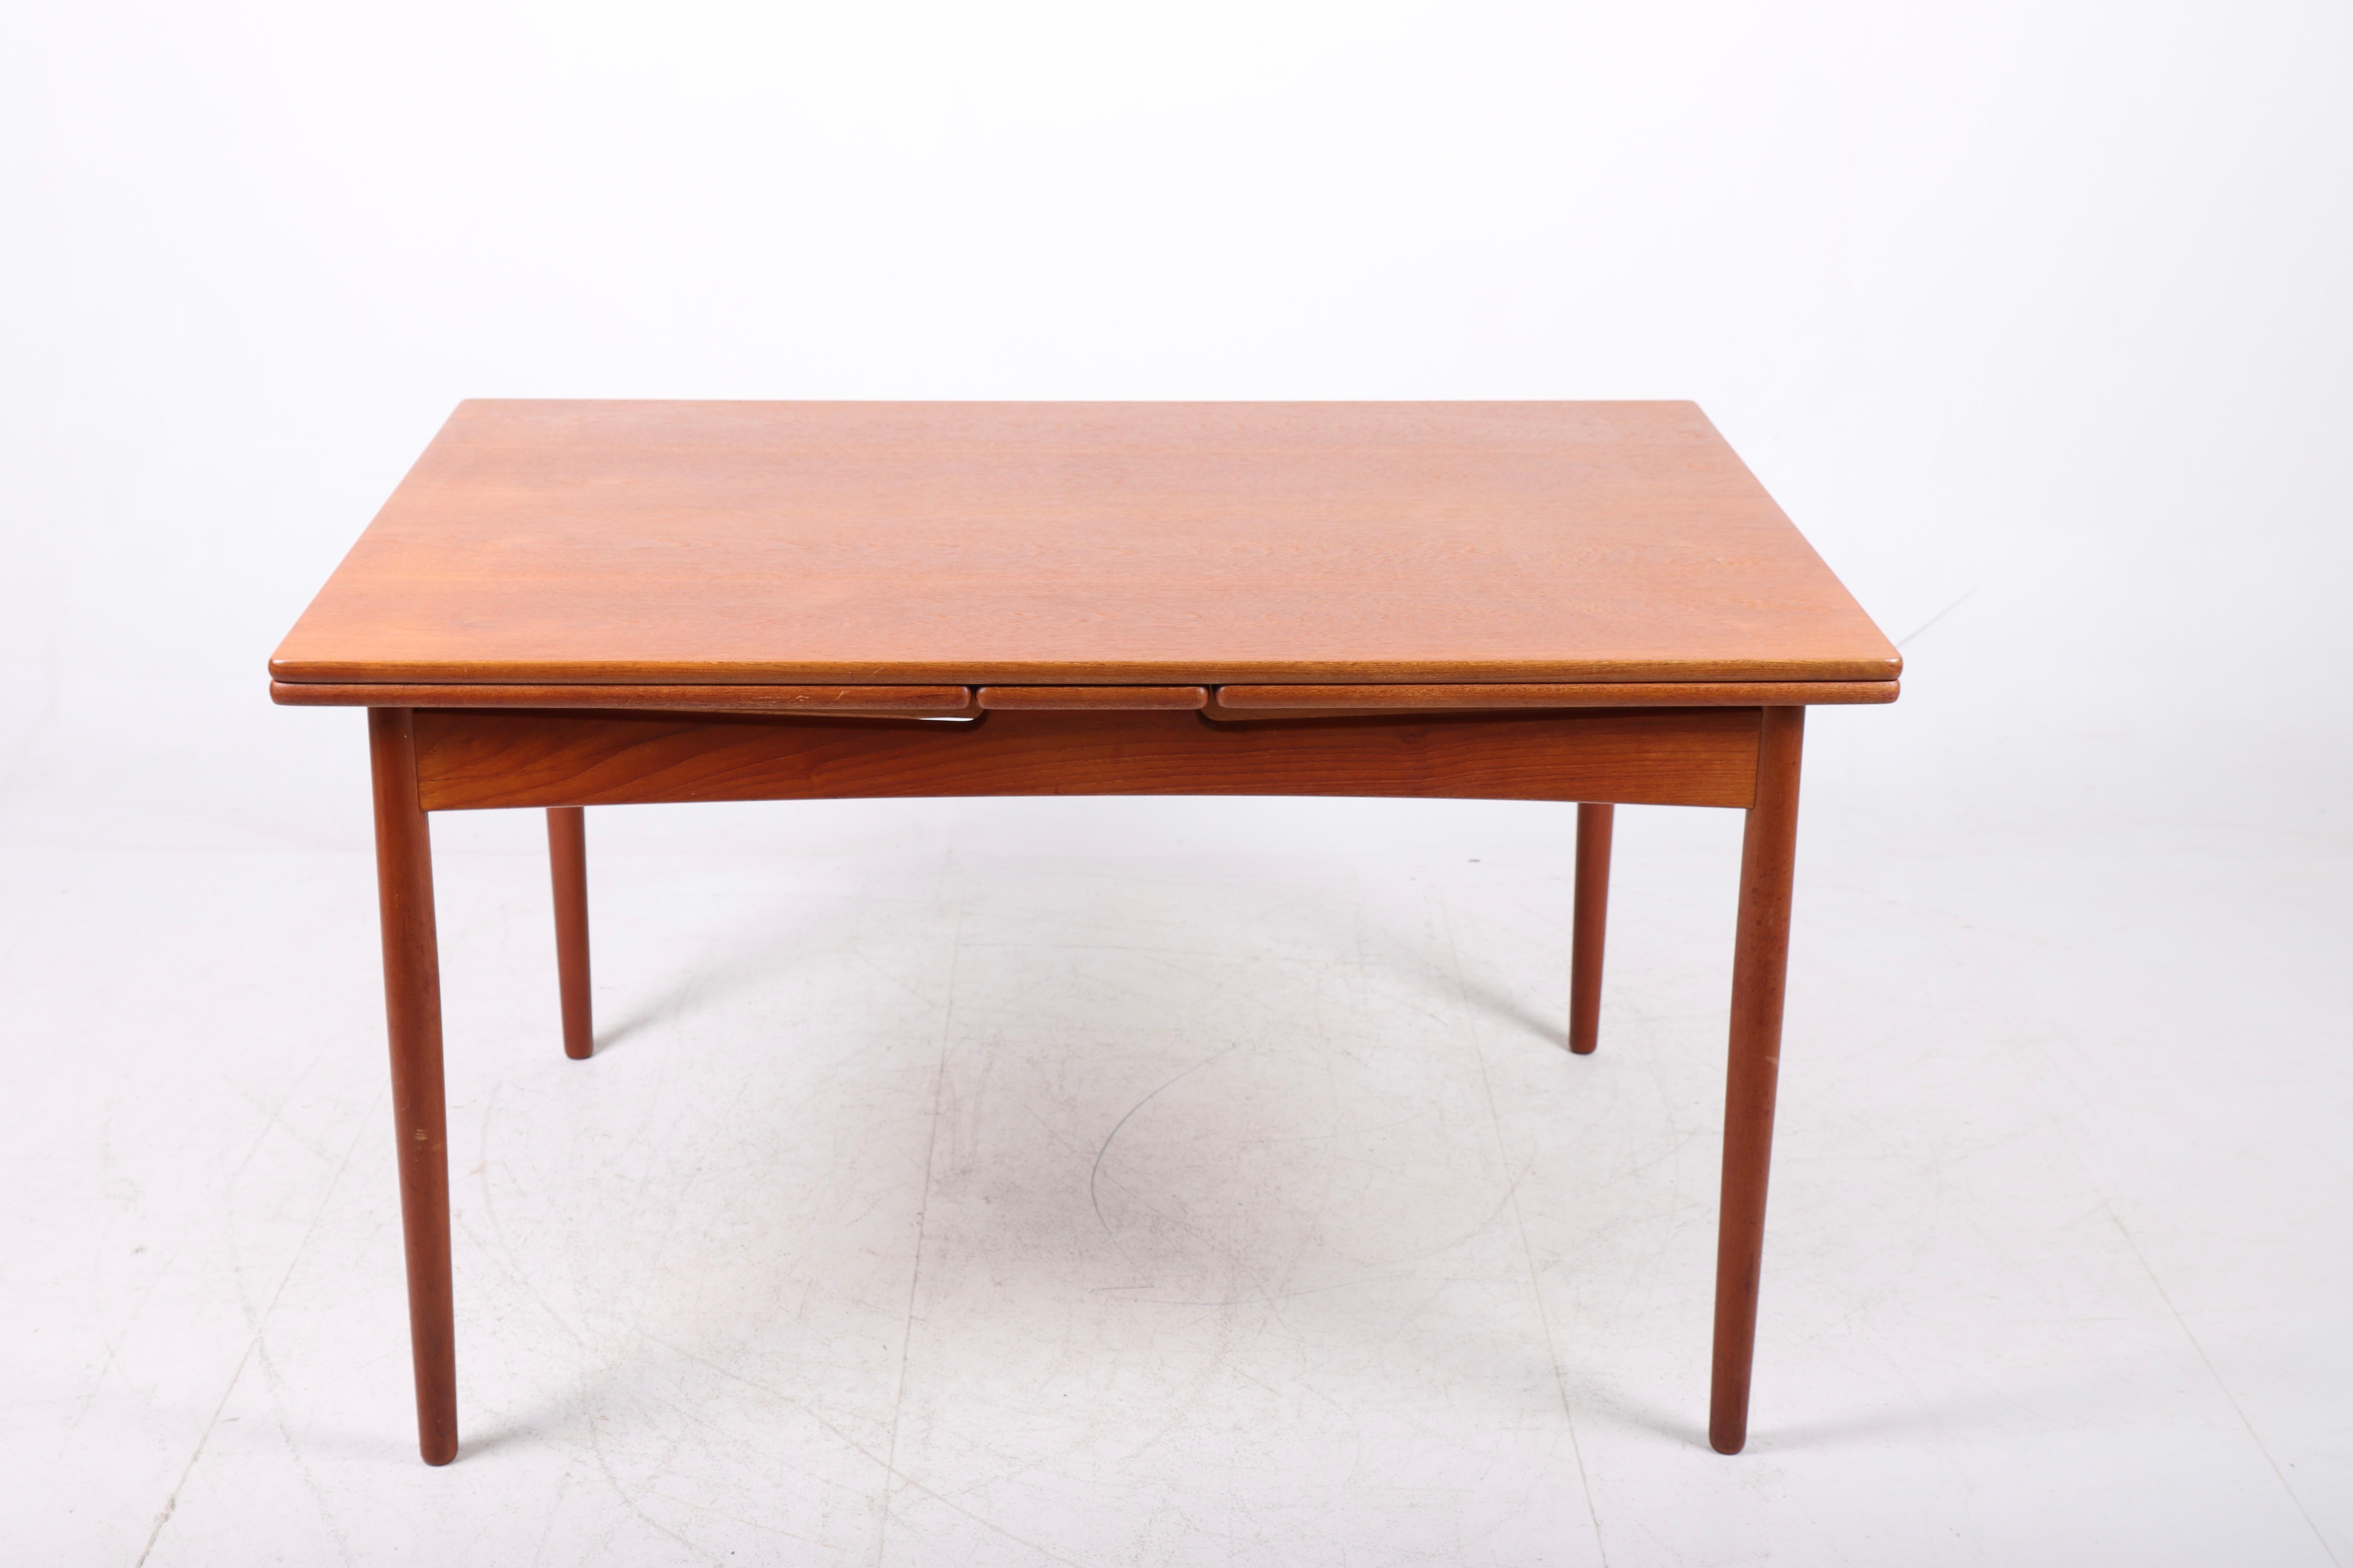 Table de salle à manger avec deux feuilles en teck patiné, conçue par Maa. Hans J. Wegner . La table est fabriquée par Willy Beck dans les années 1960. Excellent état d'origine. La longueur est de 130 cm et 240 cm en extension.